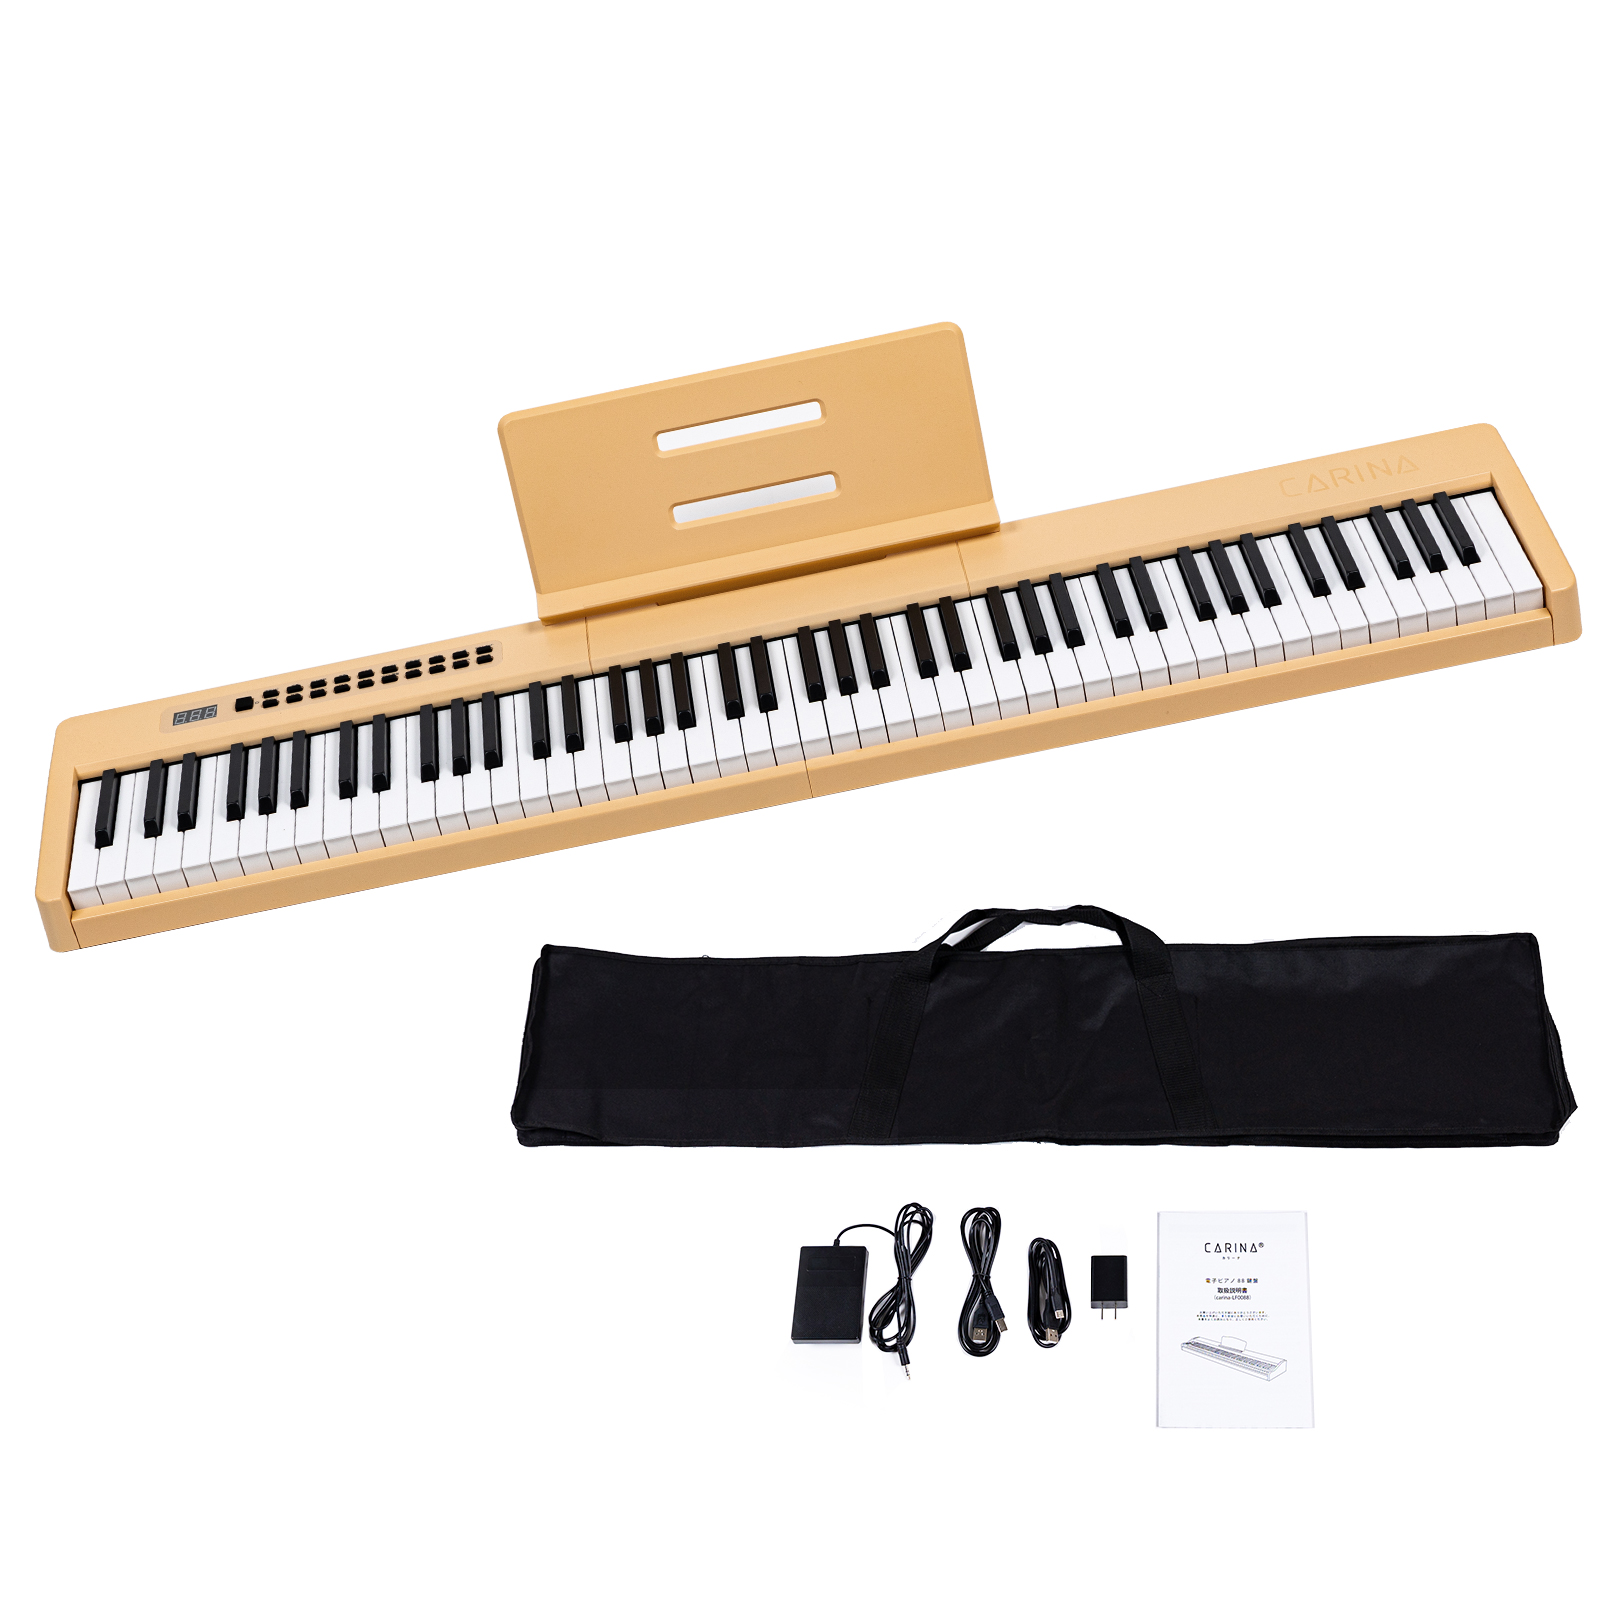 【4カラー】電子ピアノ 88鍵盤 スリムボディ 充電可能 dream音源 MIDI対応 キーボード スリム 軽い プレゼント 新学期 新生活【一年保証】